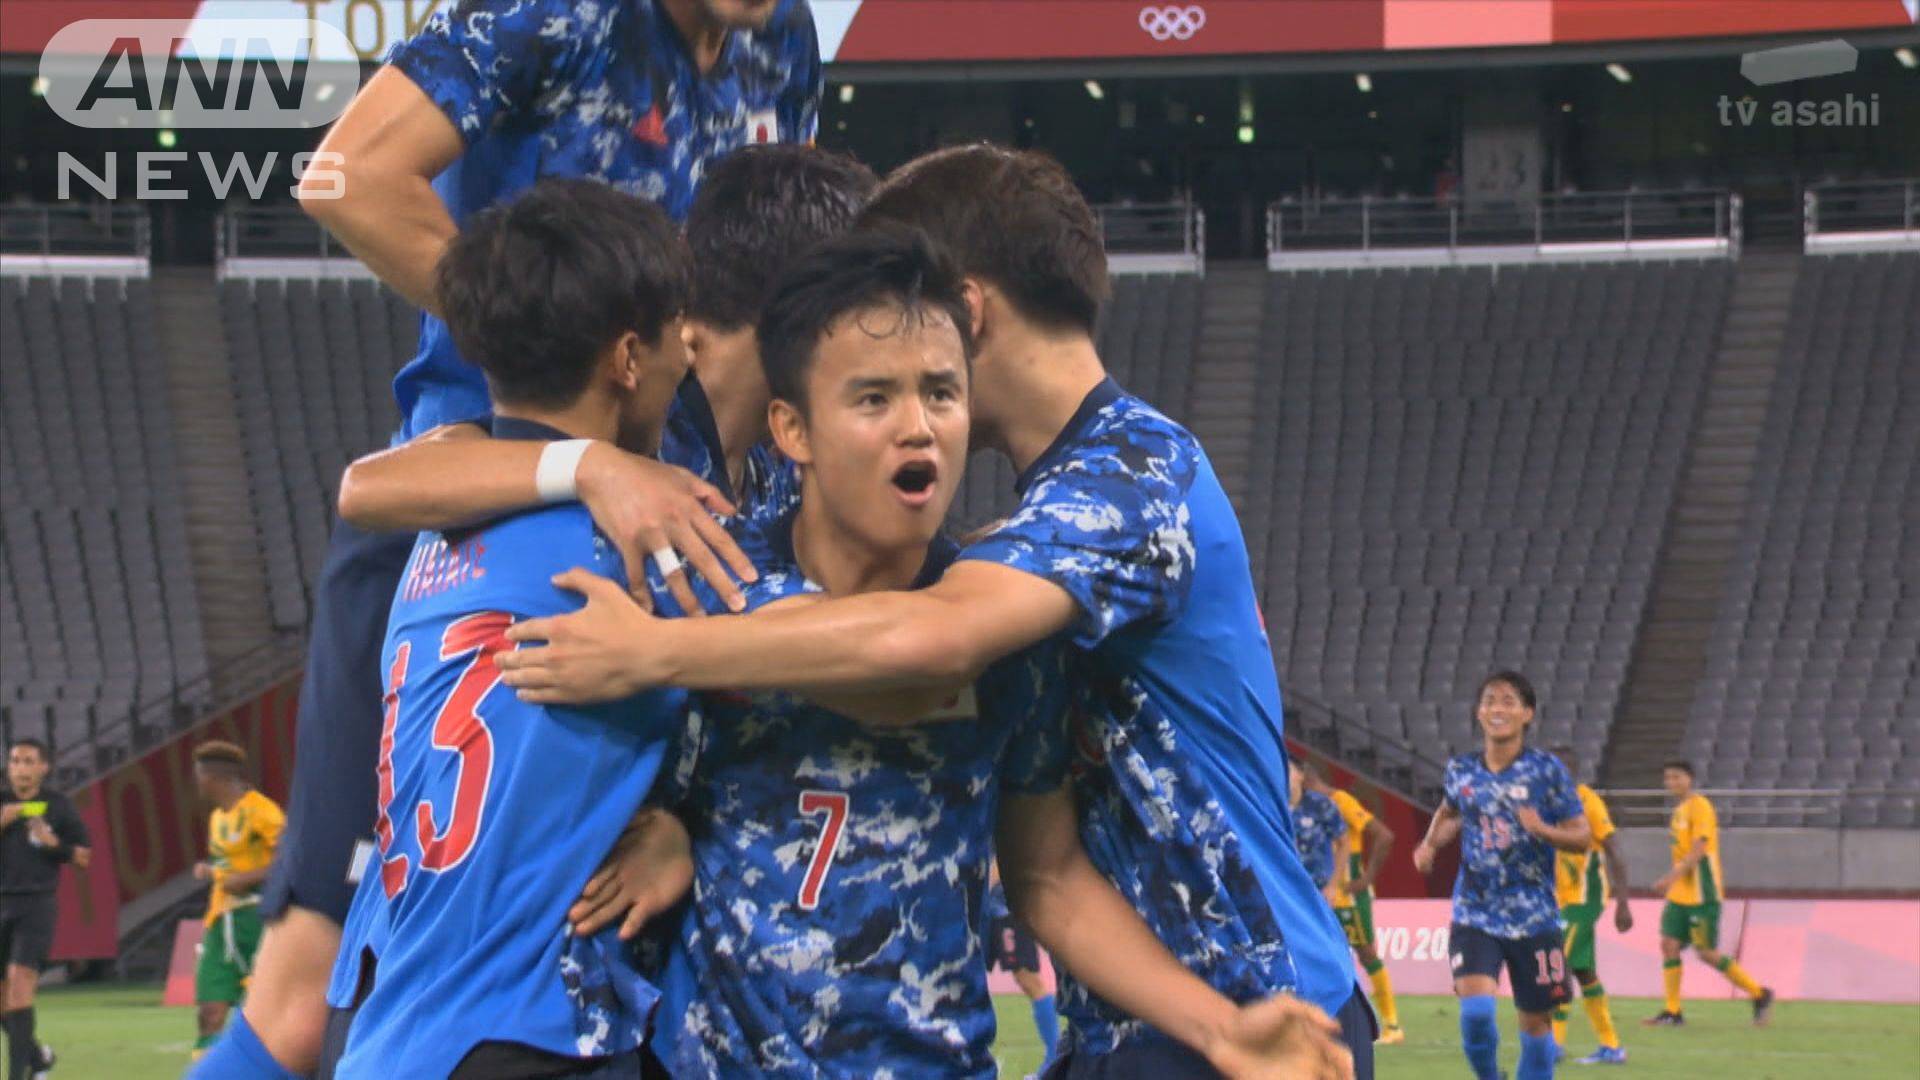 サッカー男子日本代表 南アフリカに勝利 テレ朝news テレビ朝日のニュースサイト